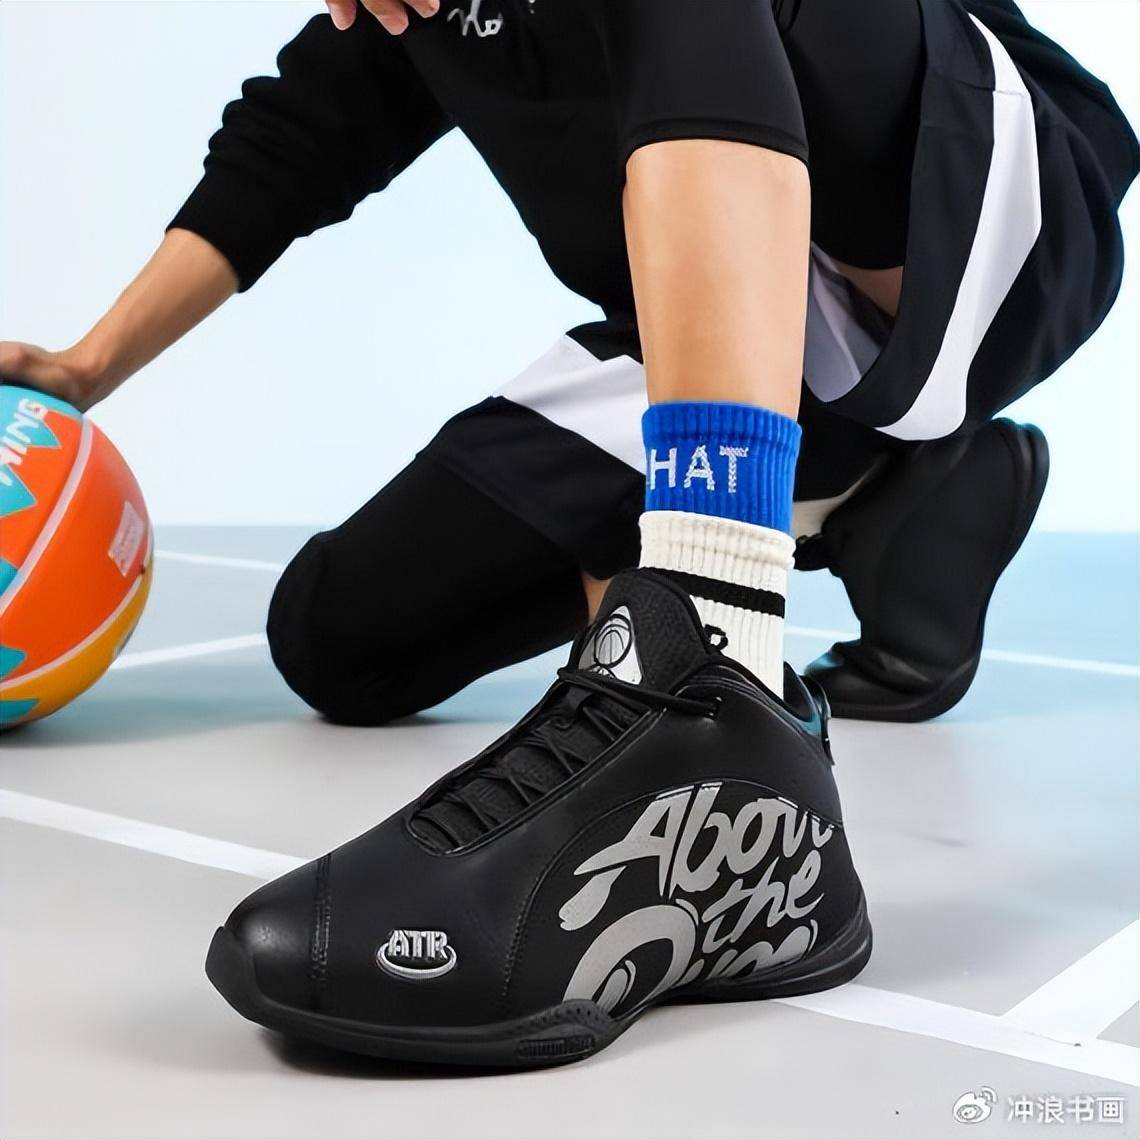 籃球平台投注_ATR进驻线上平台——街头篮球装备线上选品籃球平台投注，开启潮流运动新体验